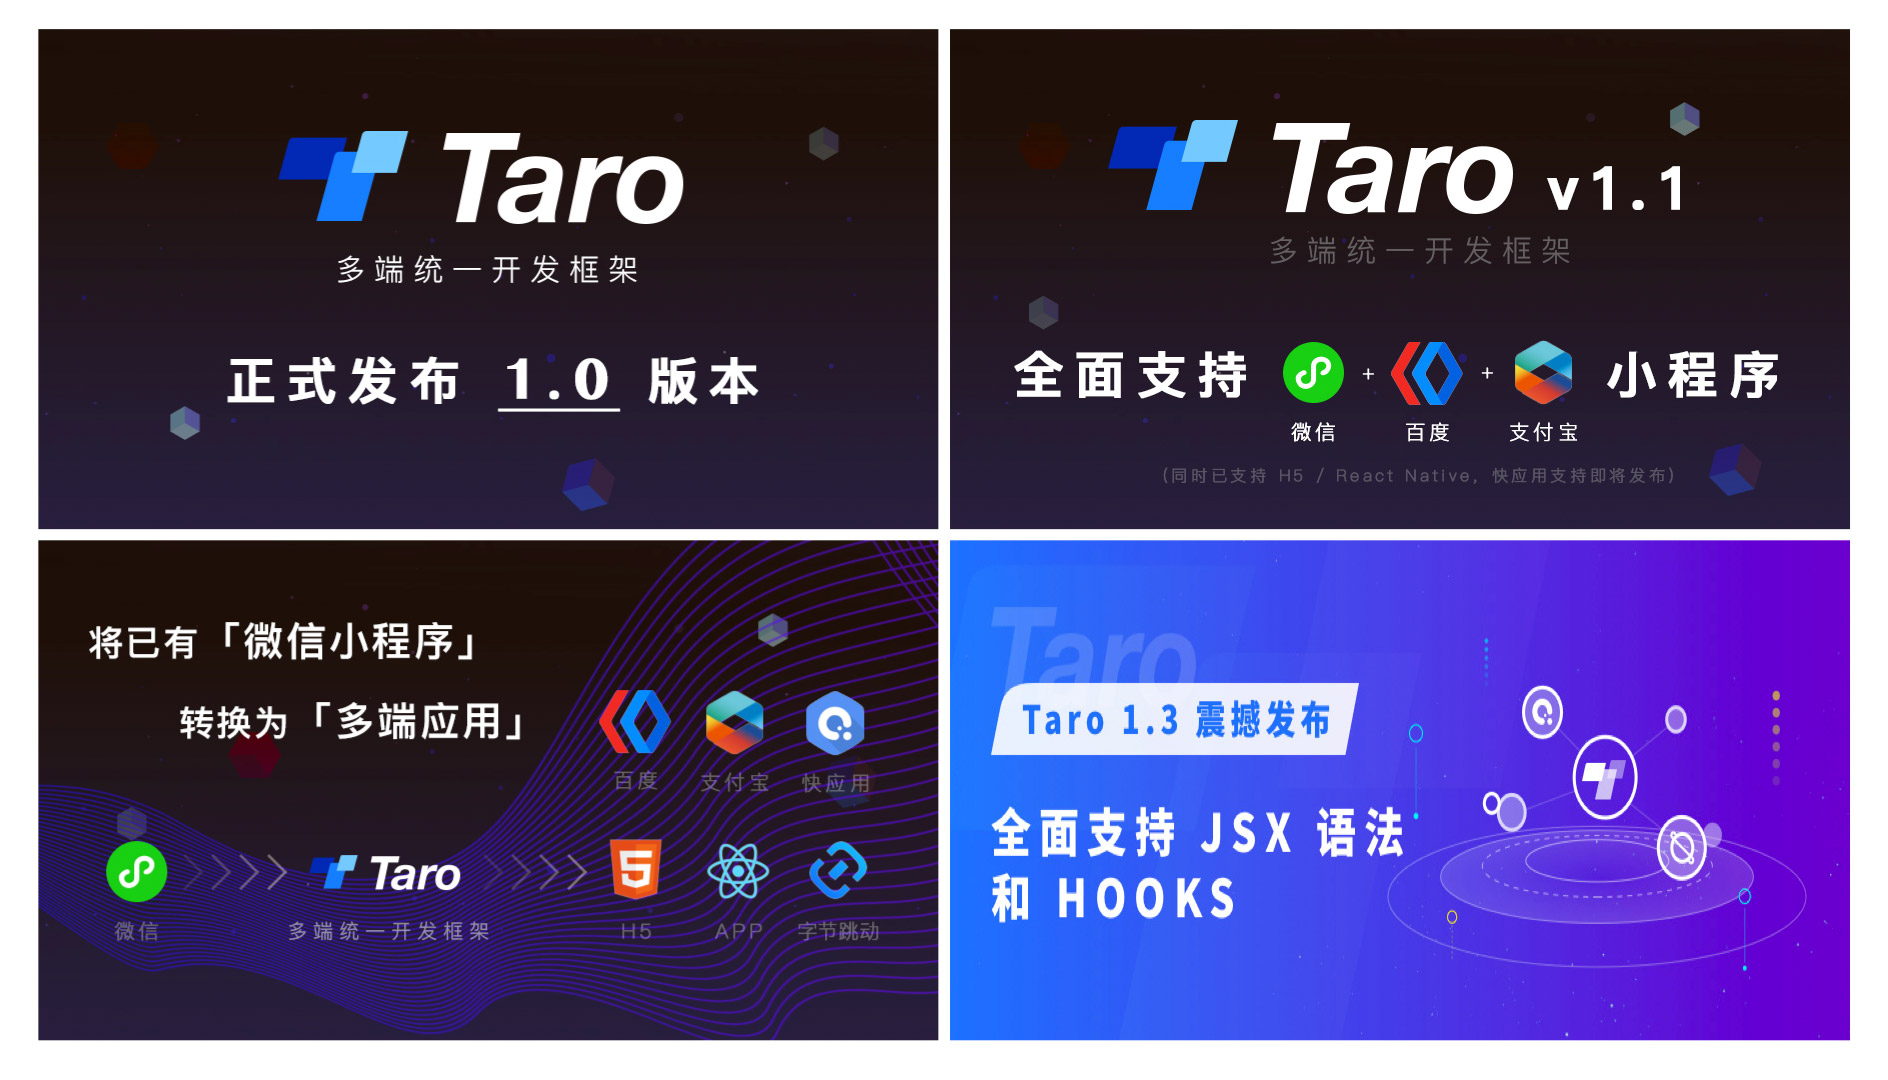 Taro 2.0：拥抱社区，拥抱变化 - 图1